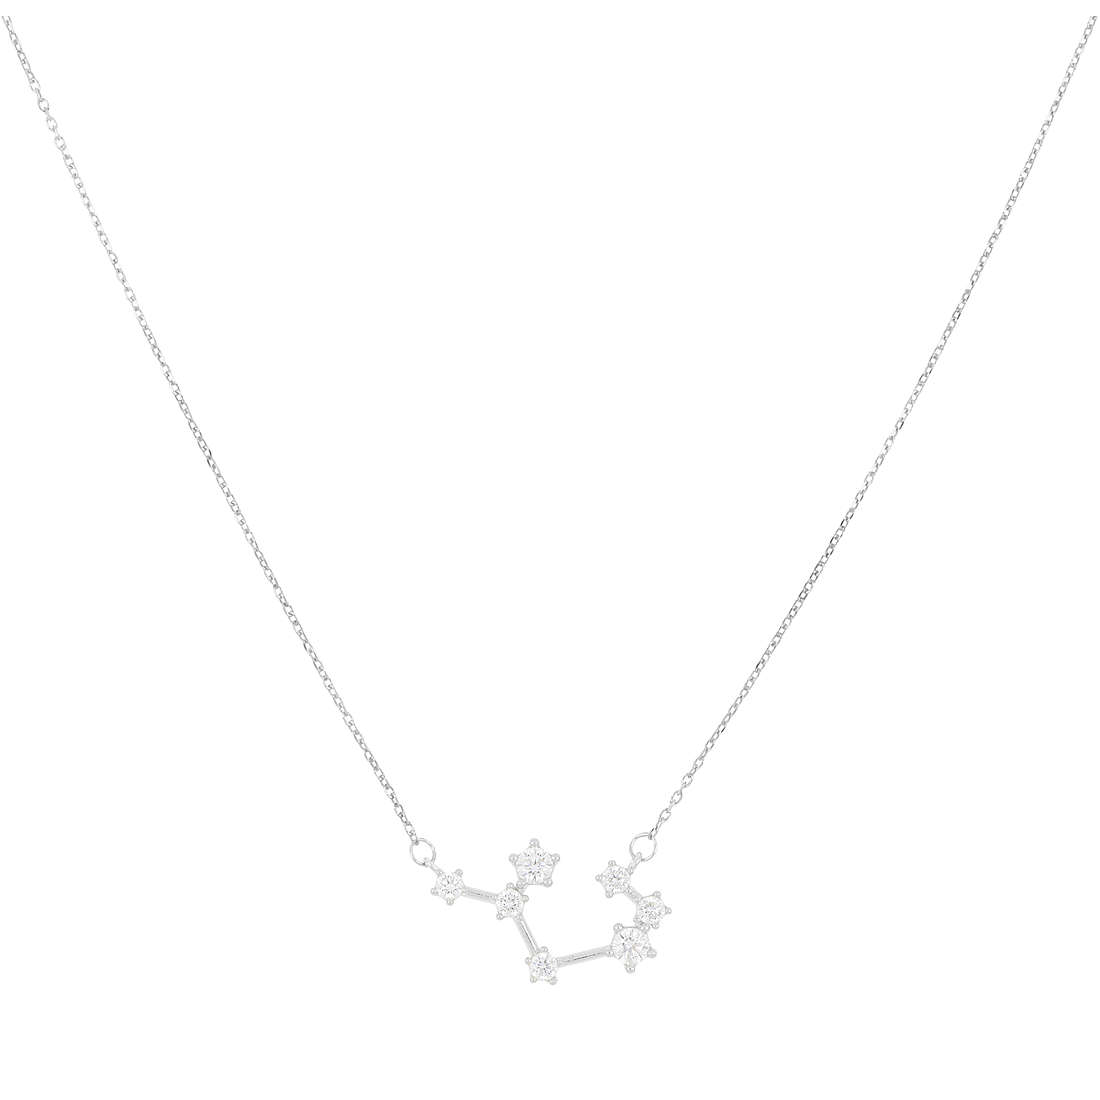 necklace woman zodiac sign Sagittarius GioiaPura jewel Zodiaco GYXCAZ0018-SAG